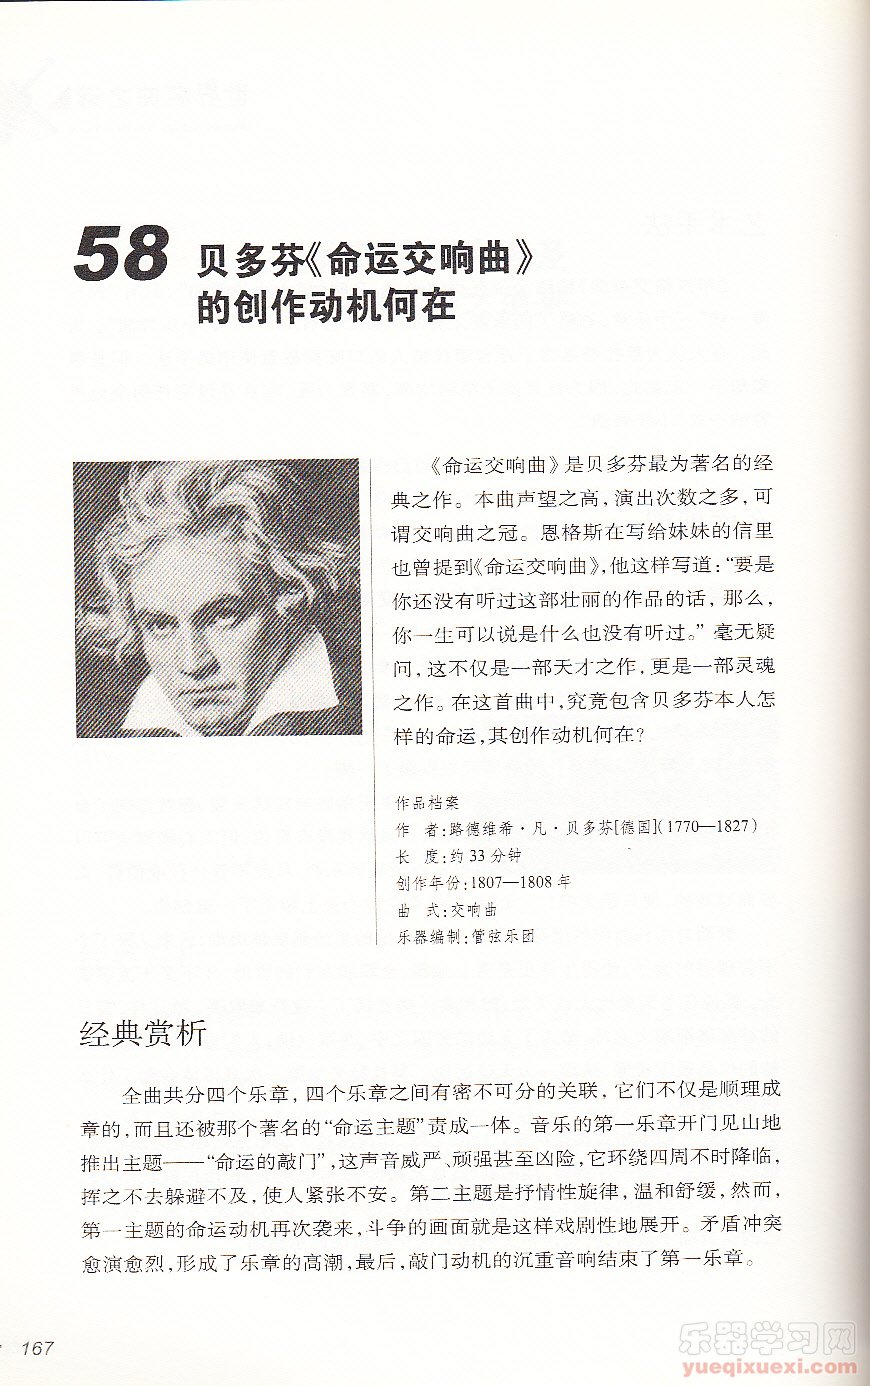 【名曲】贝多芬《命运交响曲》的创作动机